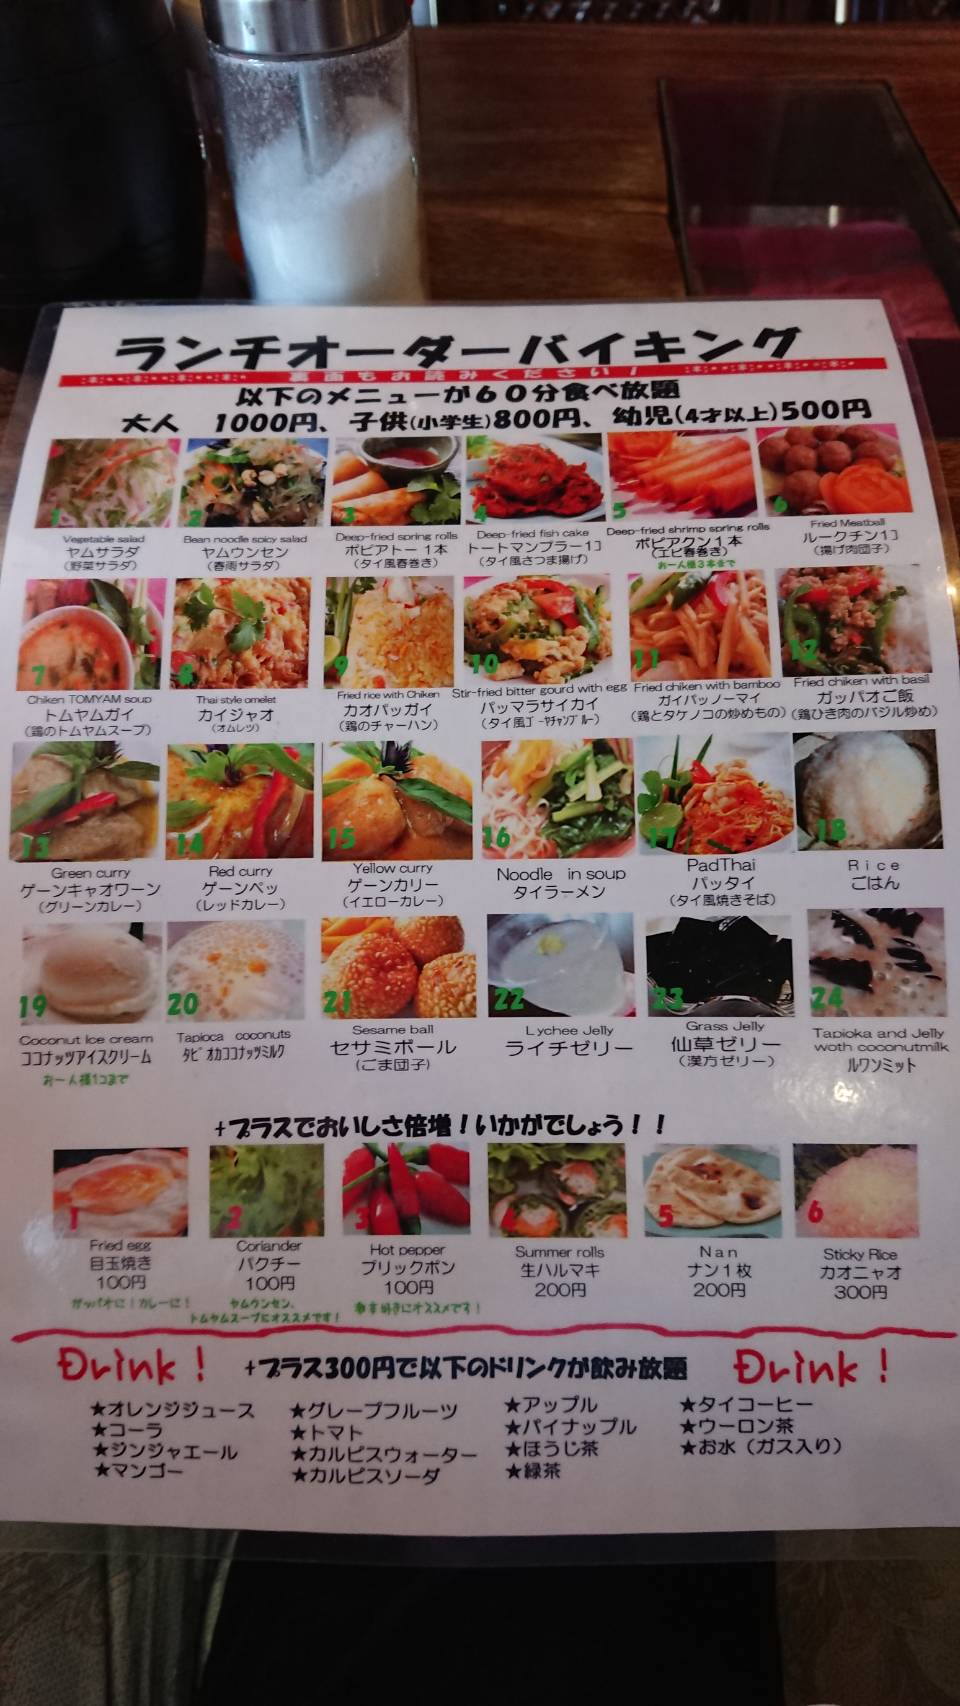 綾瀬 アジア料理 Asian Asian 1000円オーダーバイキングでアジア料理を満喫 ご飯にのせたい８万のもの